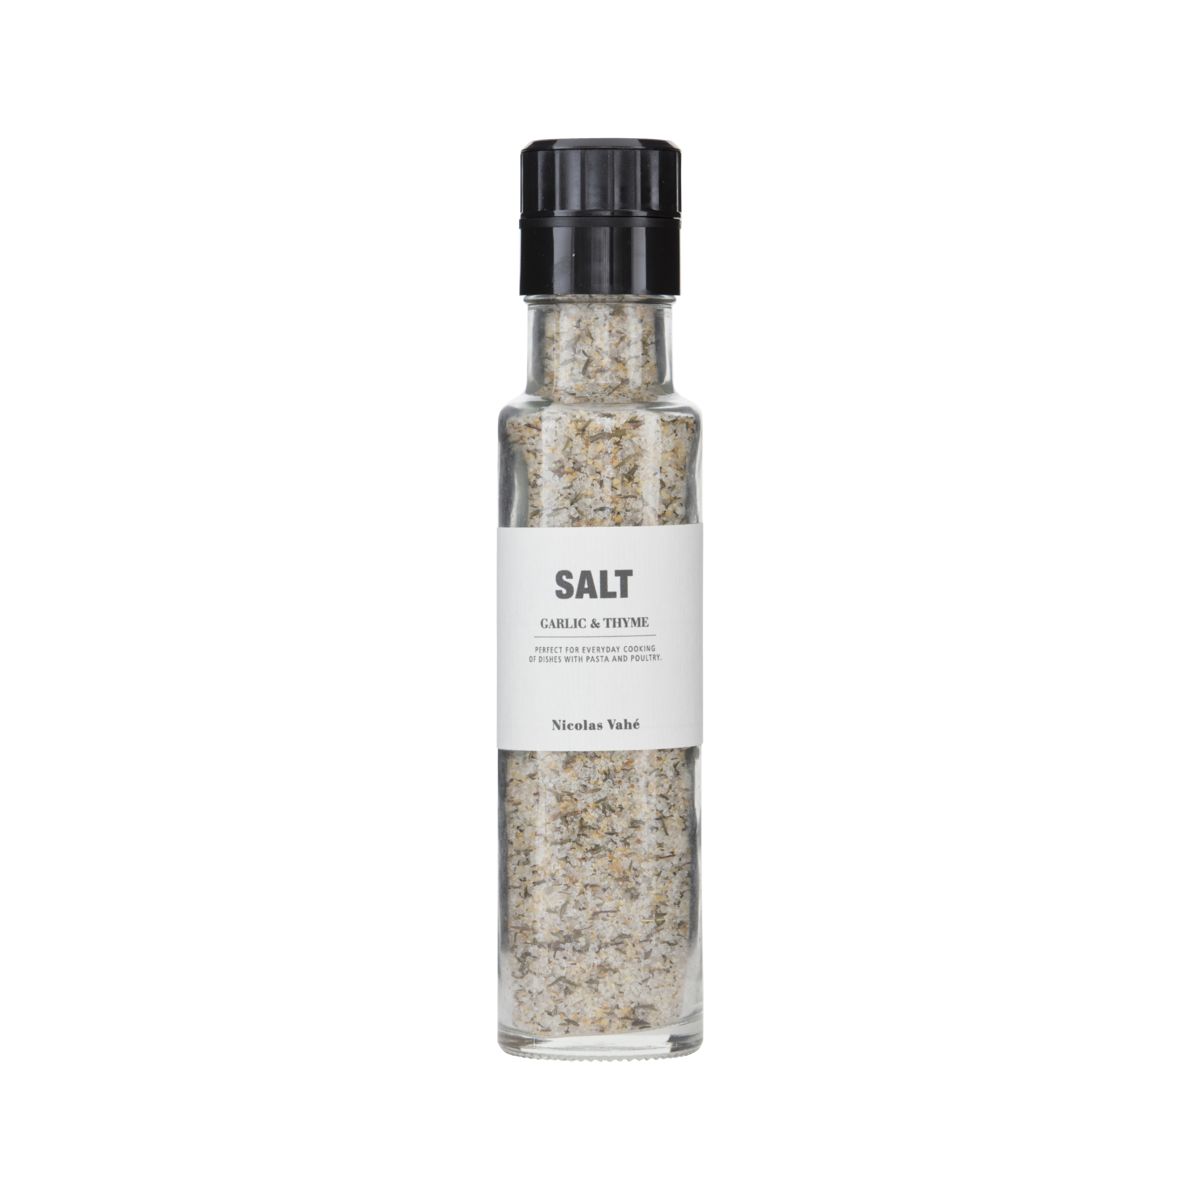 Nicolas Vahé  Garlic And Thyme Salt